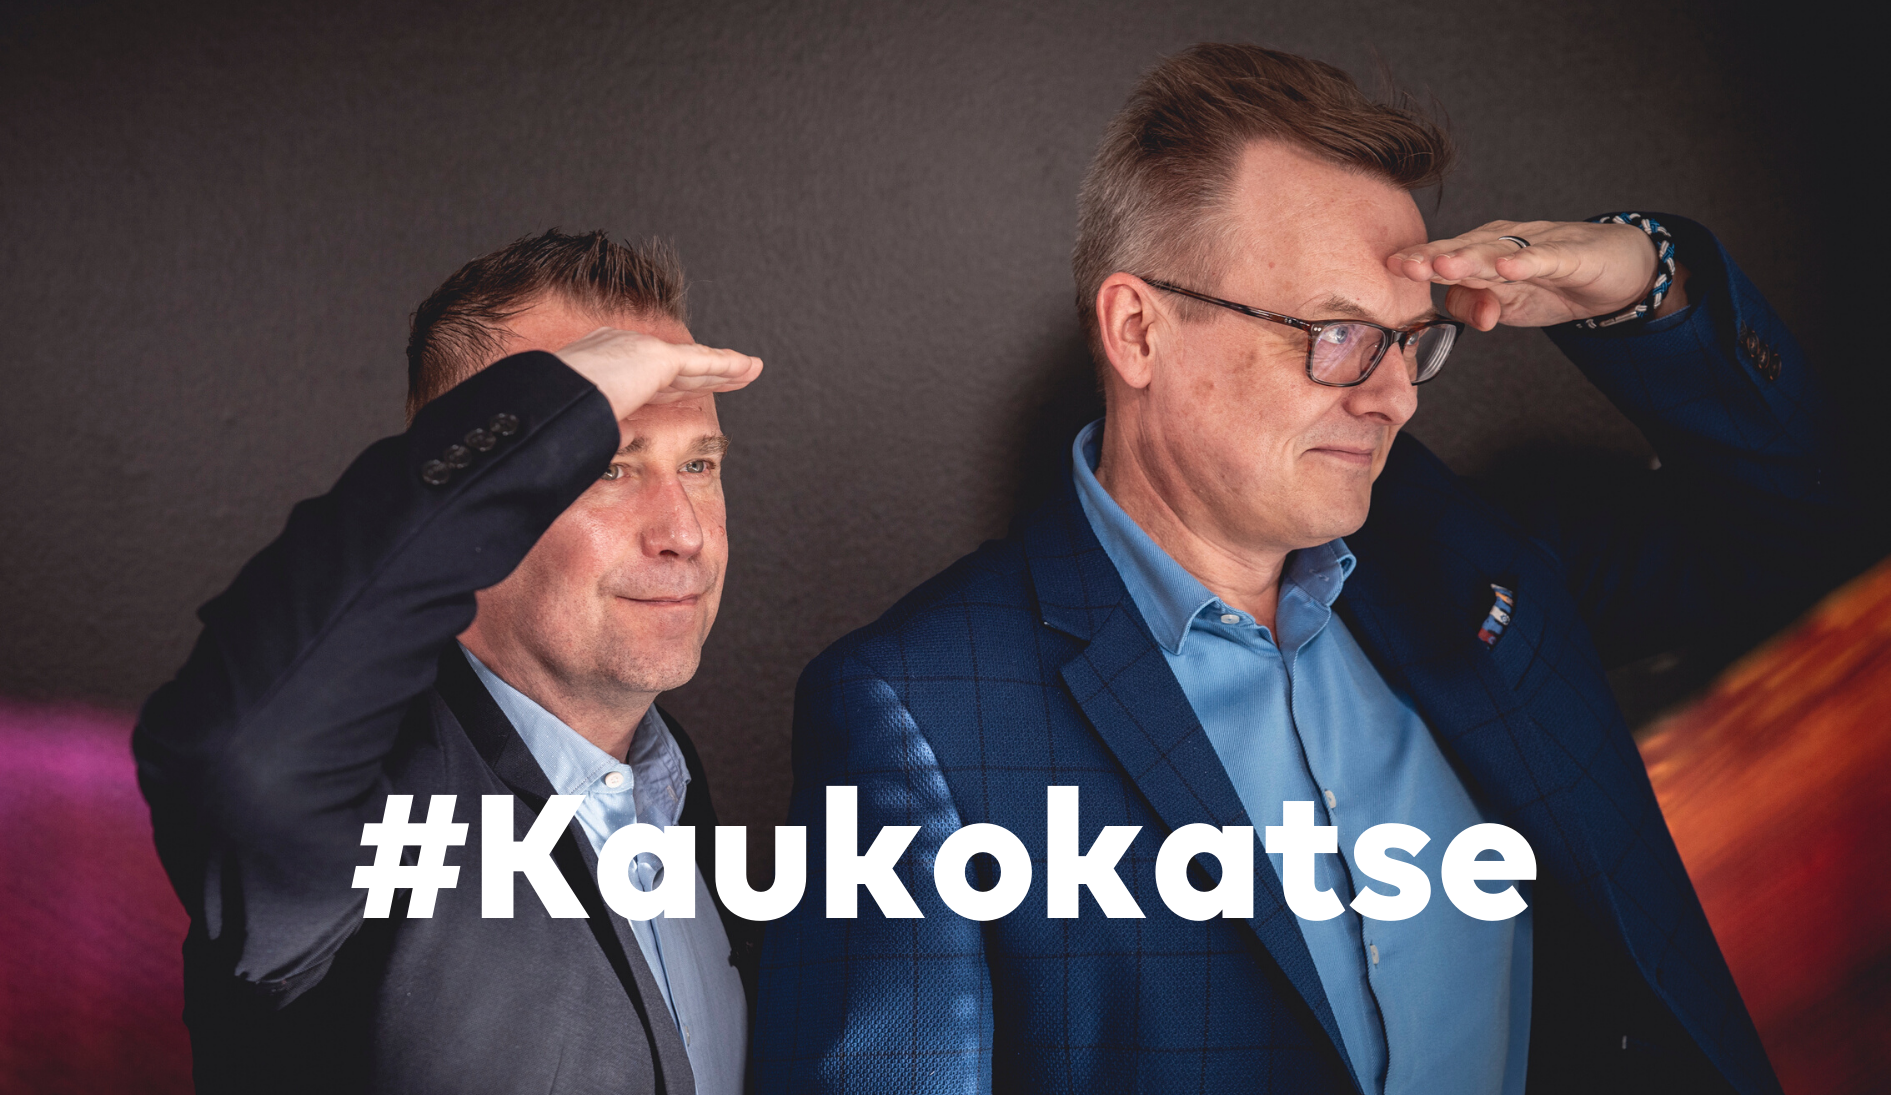 Kaukokatse videokeskustelu Vesa Siitari ja Juha Rytkönen